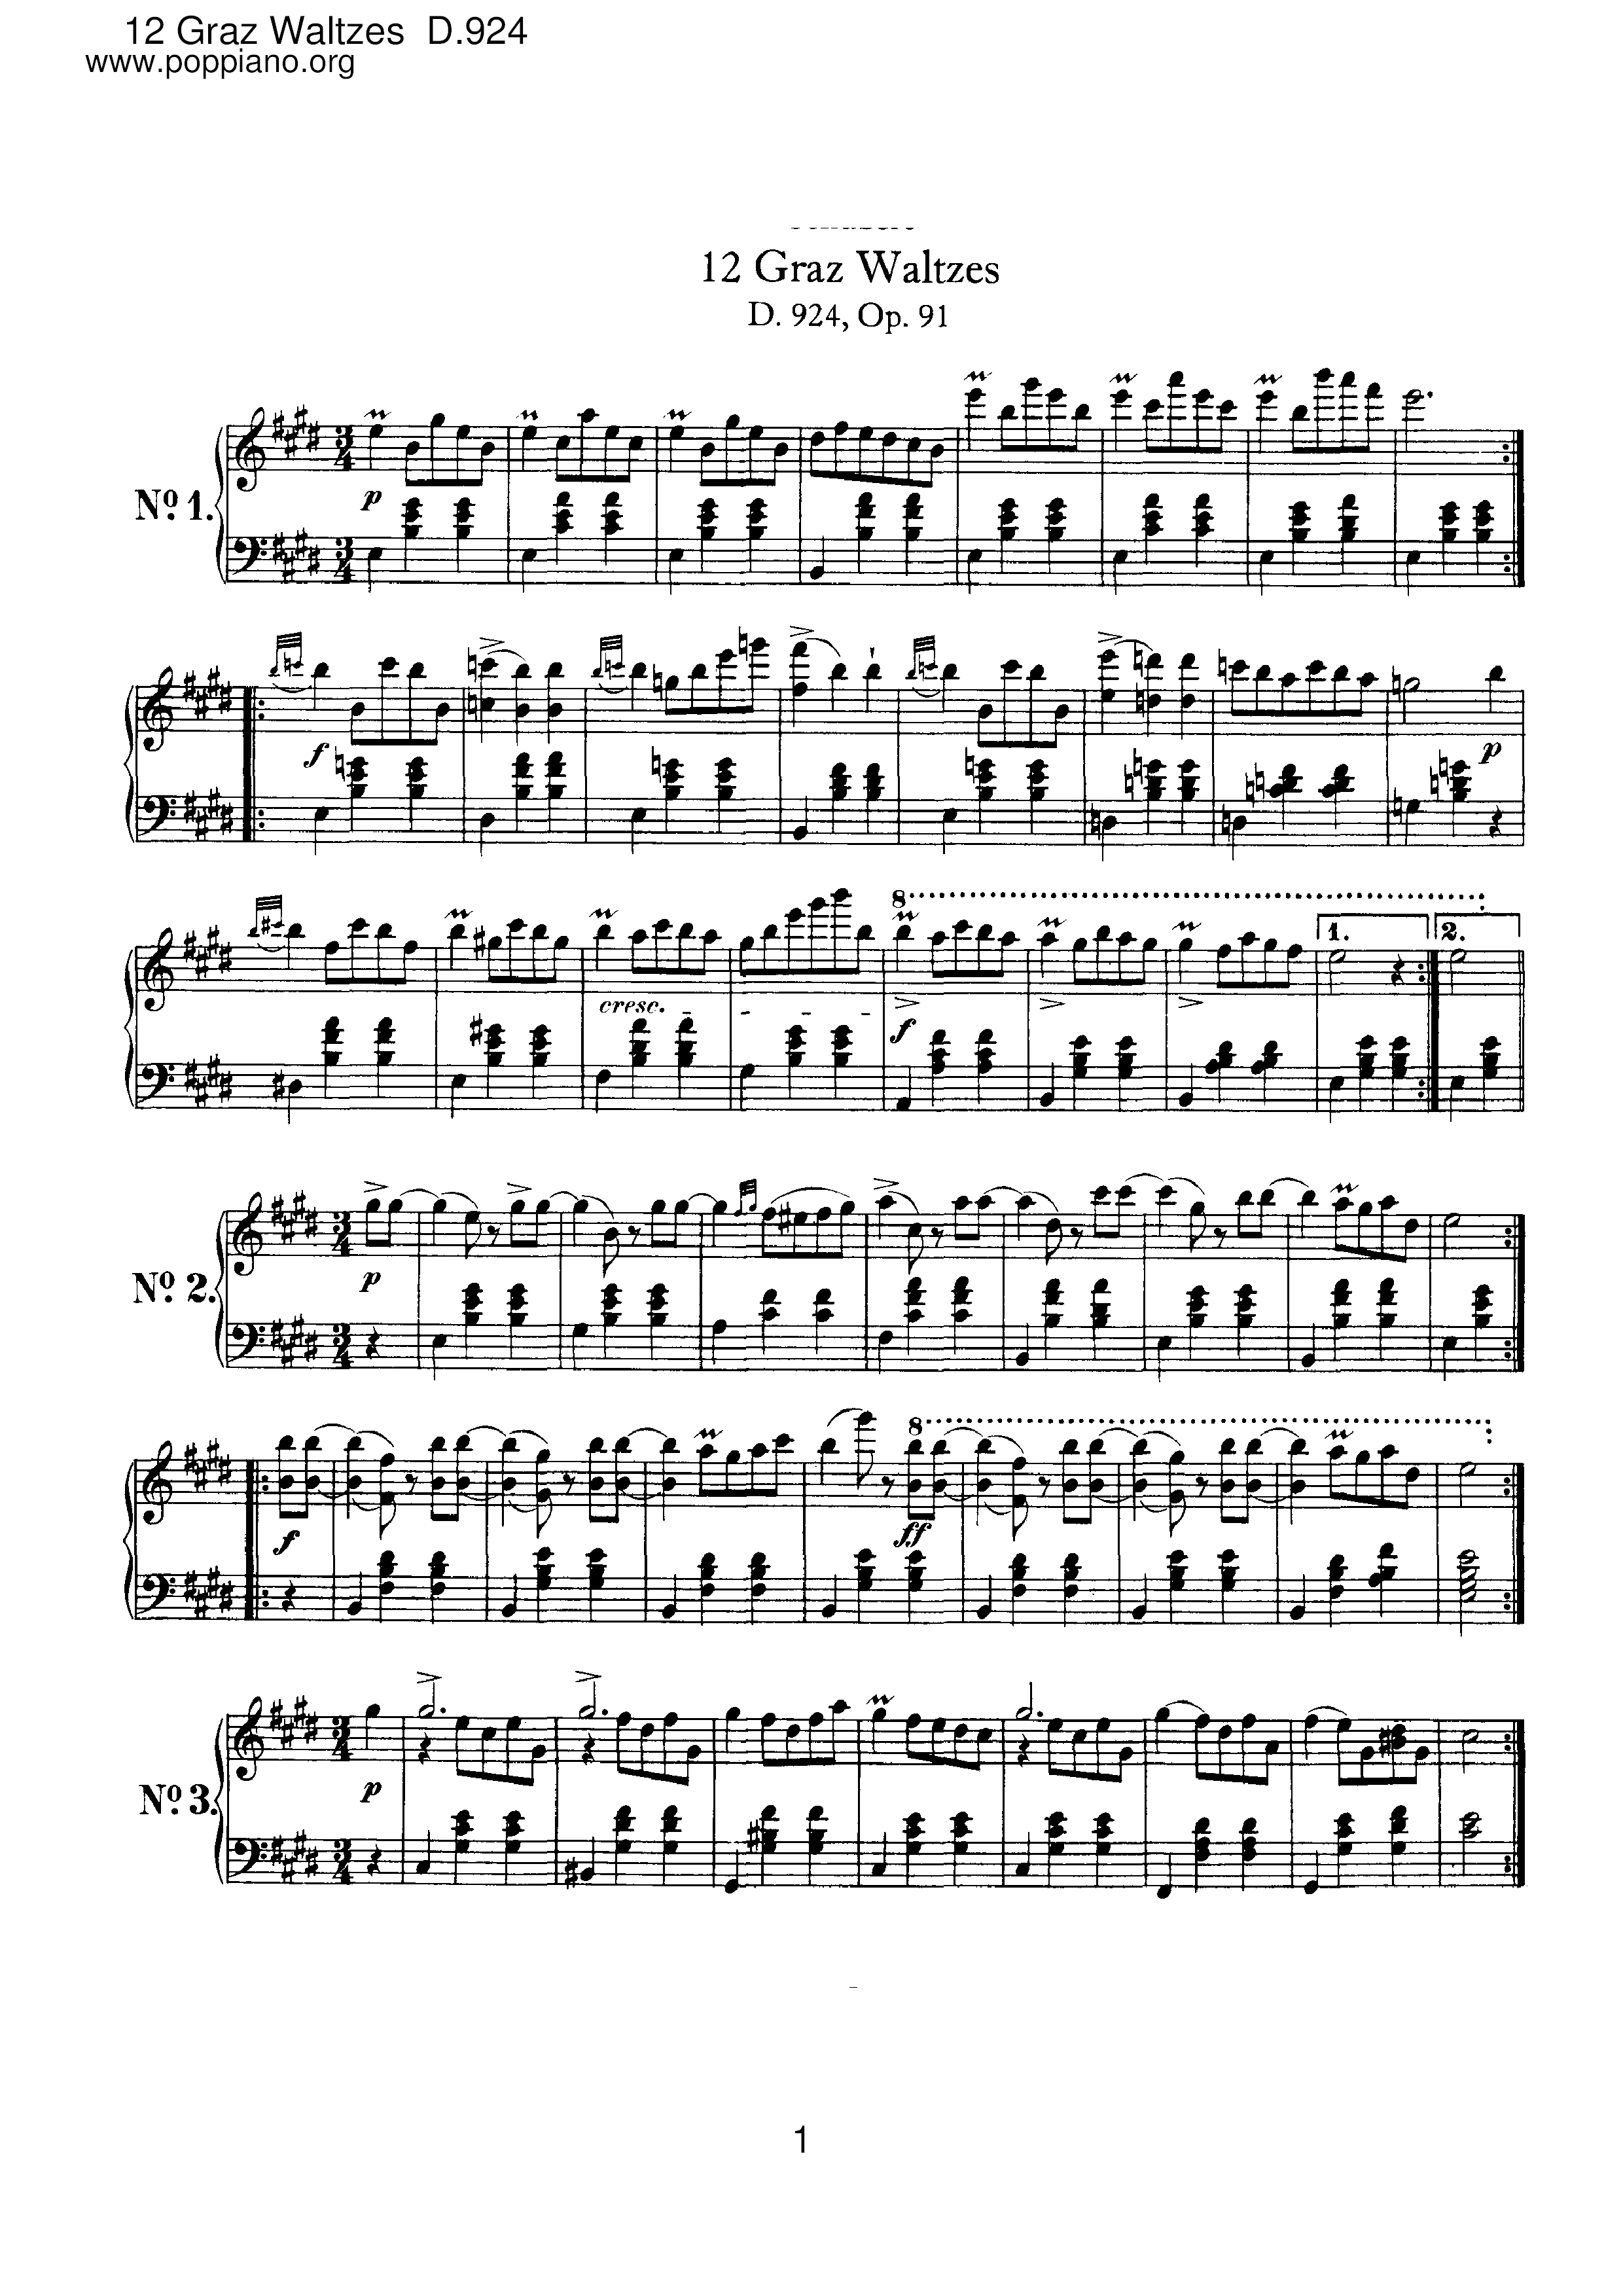 12 Graz Waltzes, D.924 (Op.91)ピアノ譜